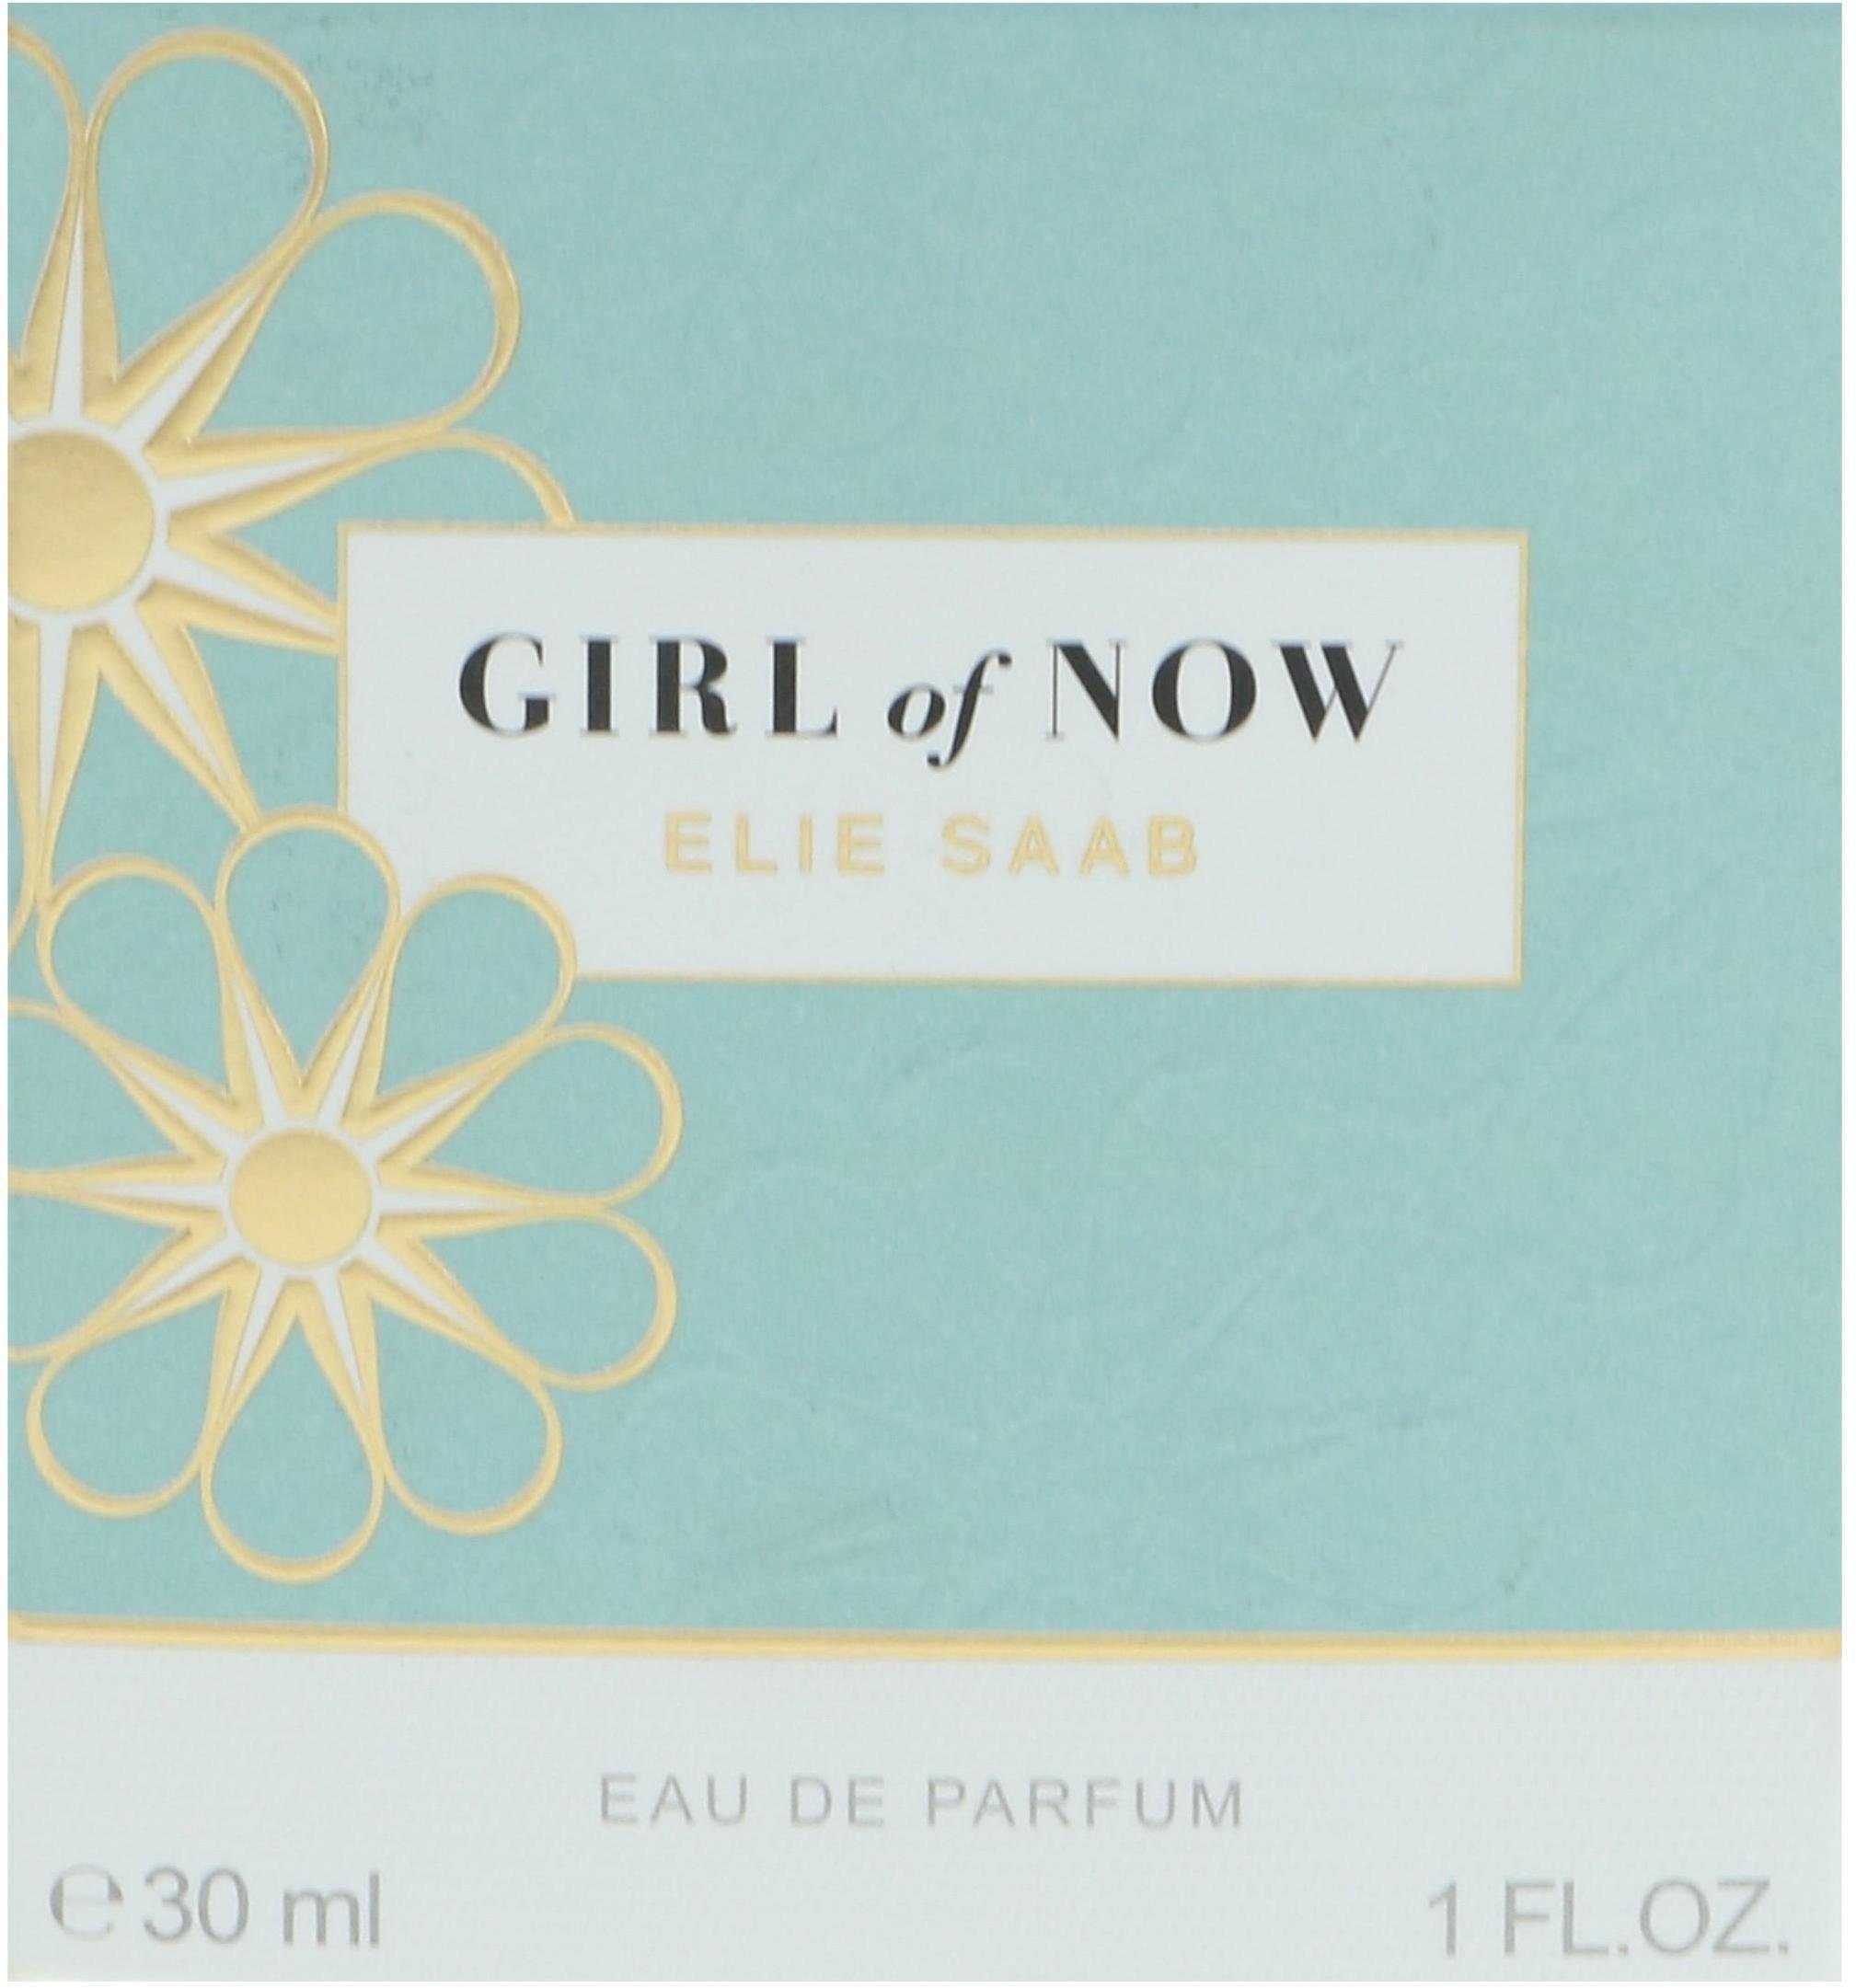 Now SAAB Eau ELIE Elie Saab Parfum de of Girl